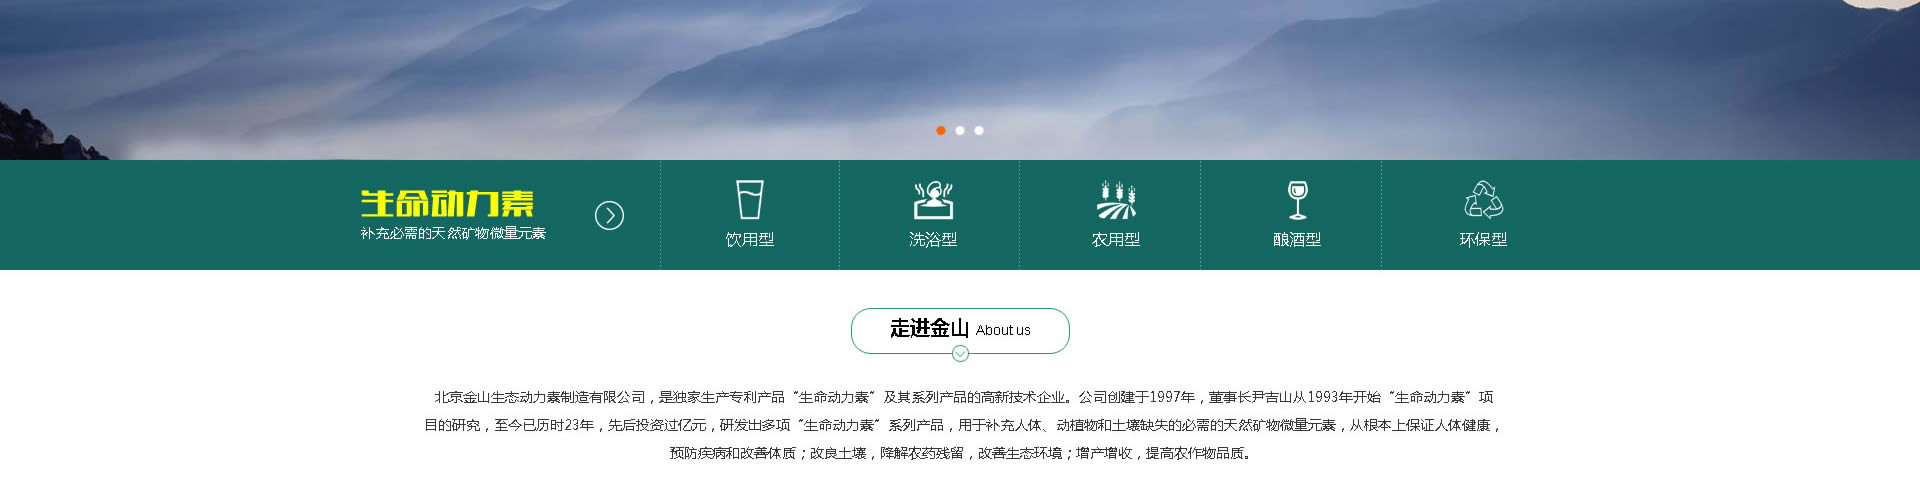 北京金山生态动力素制造有限公司